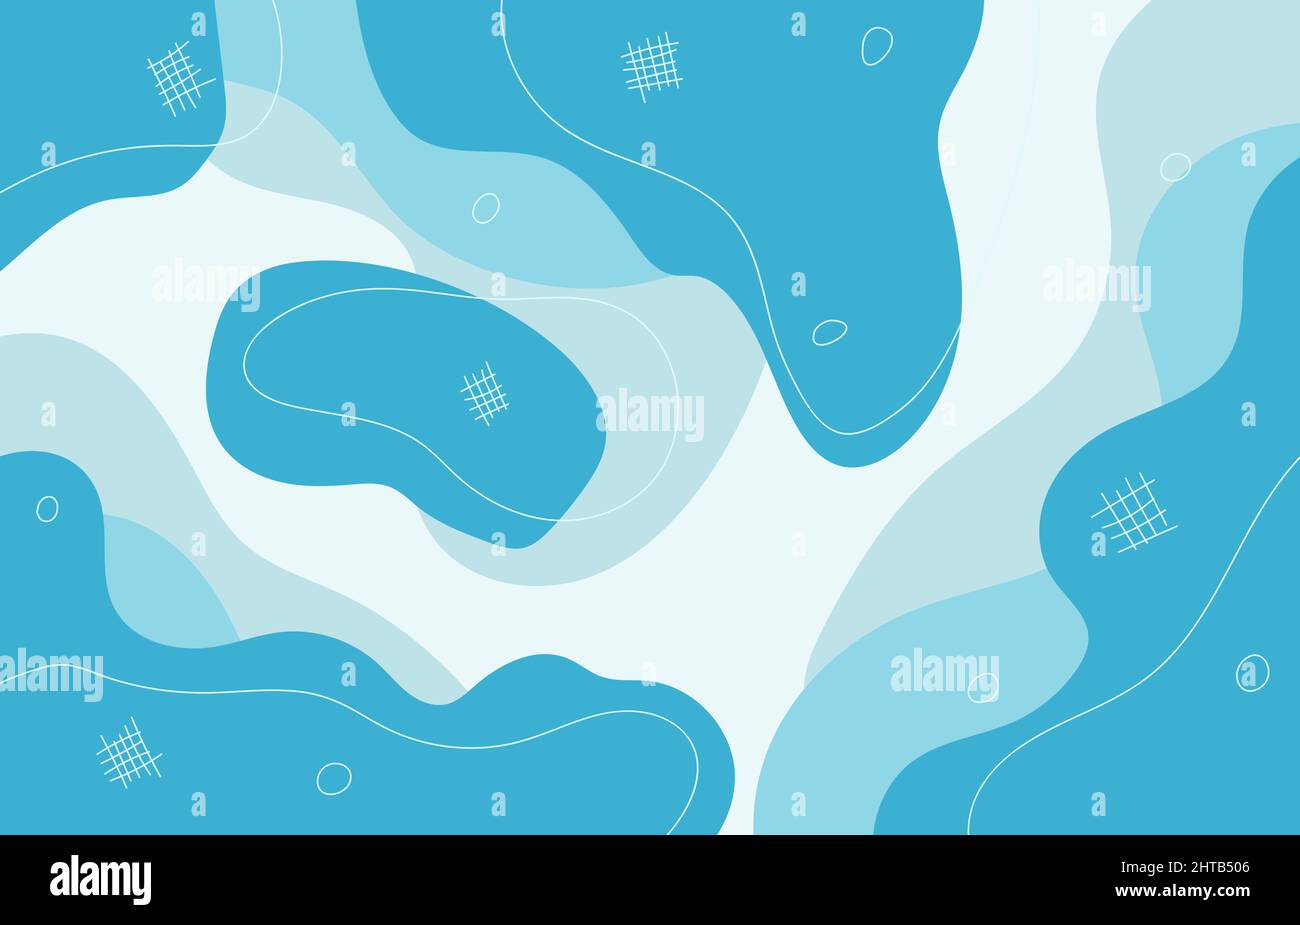 Motif de gribouillages bleus abstraits style artistique décoratif. Modèle minimal de fond bleu clair de mer. Vecteur d'illustration Illustration de Vecteur